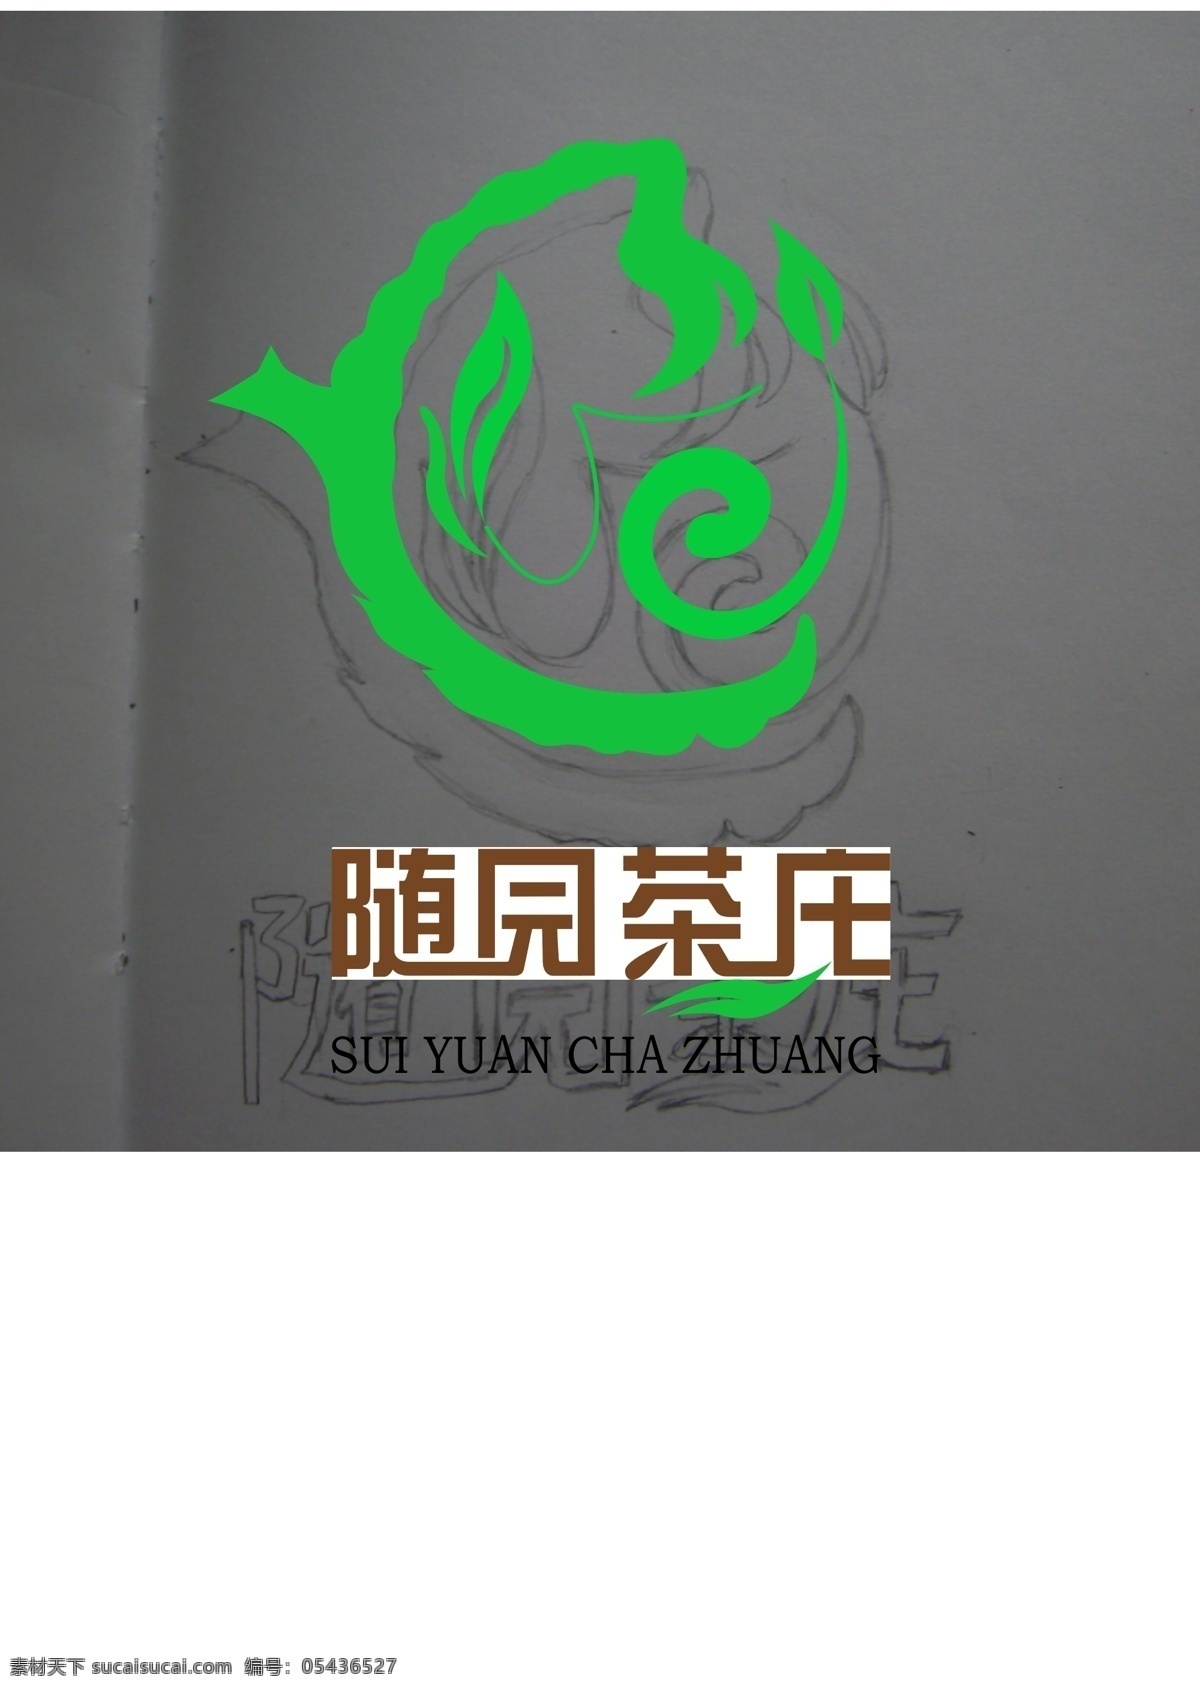 茶庄logo 标志设计 标识标志图标 矢量 白色